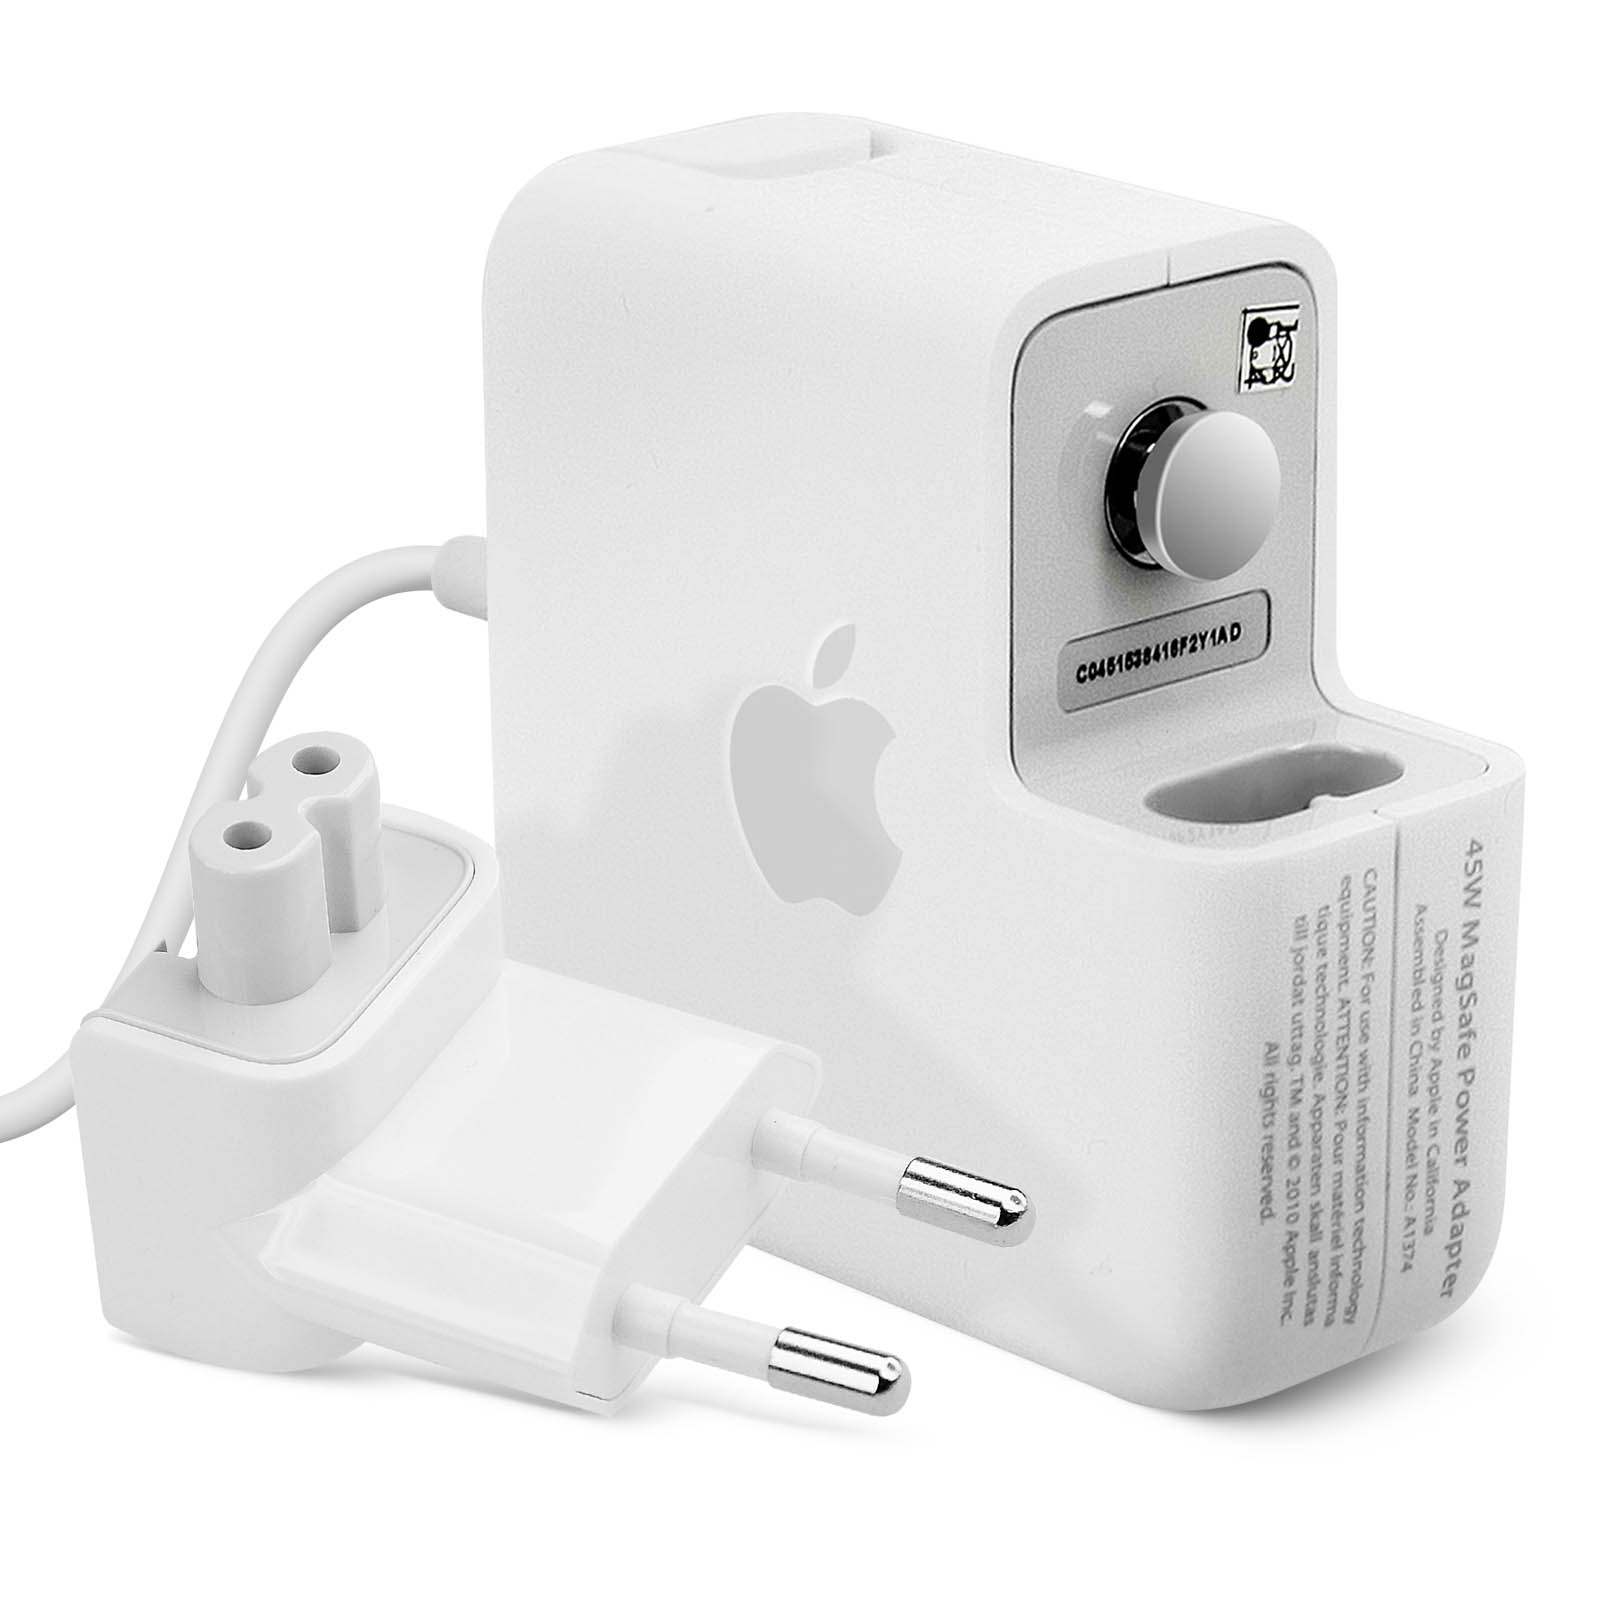 Accessoire pour MacBook Air 11. Chargeur MagSafe 45W